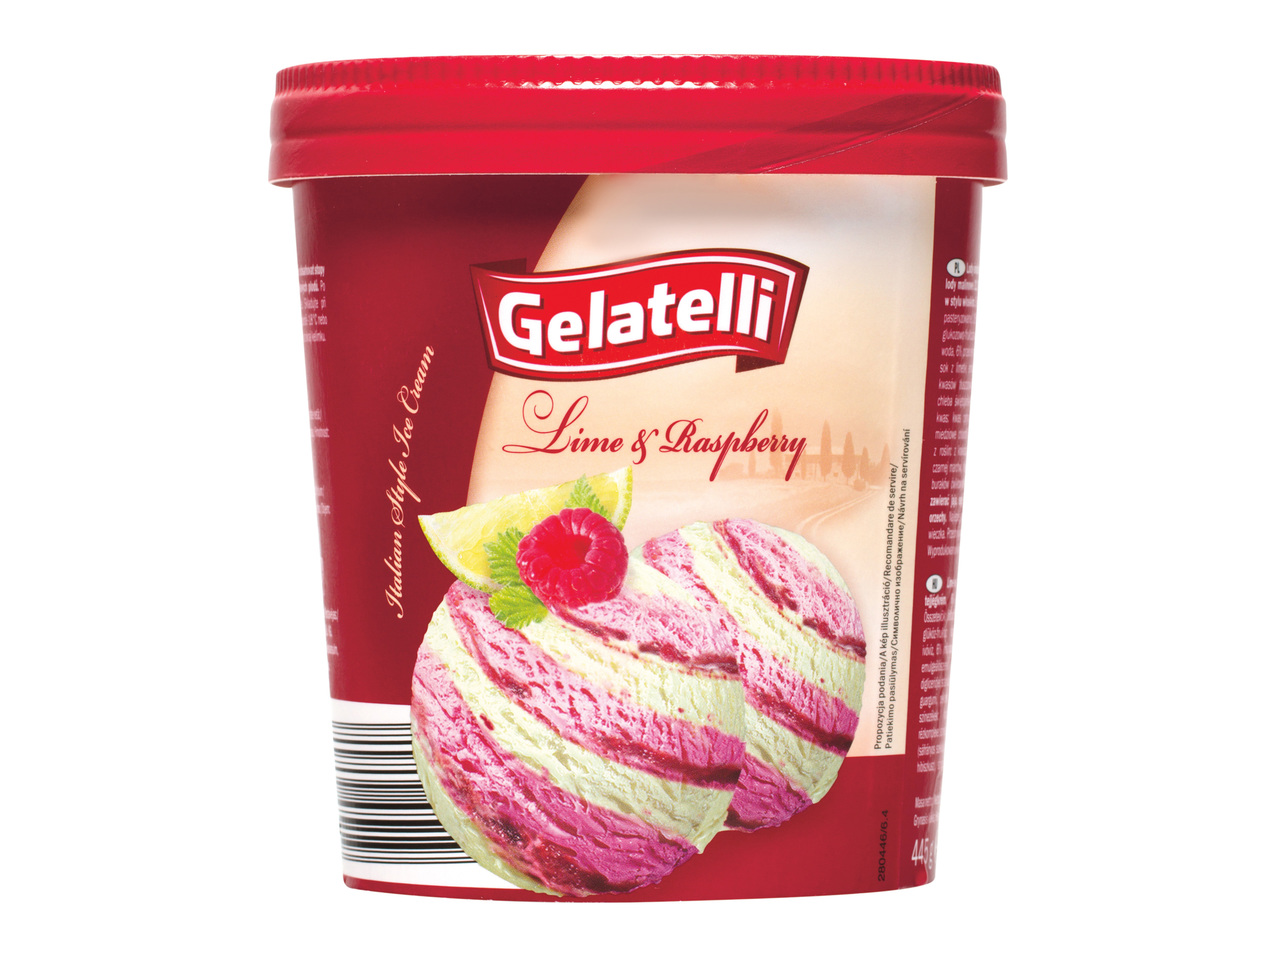 Înghețată în stil italienesc